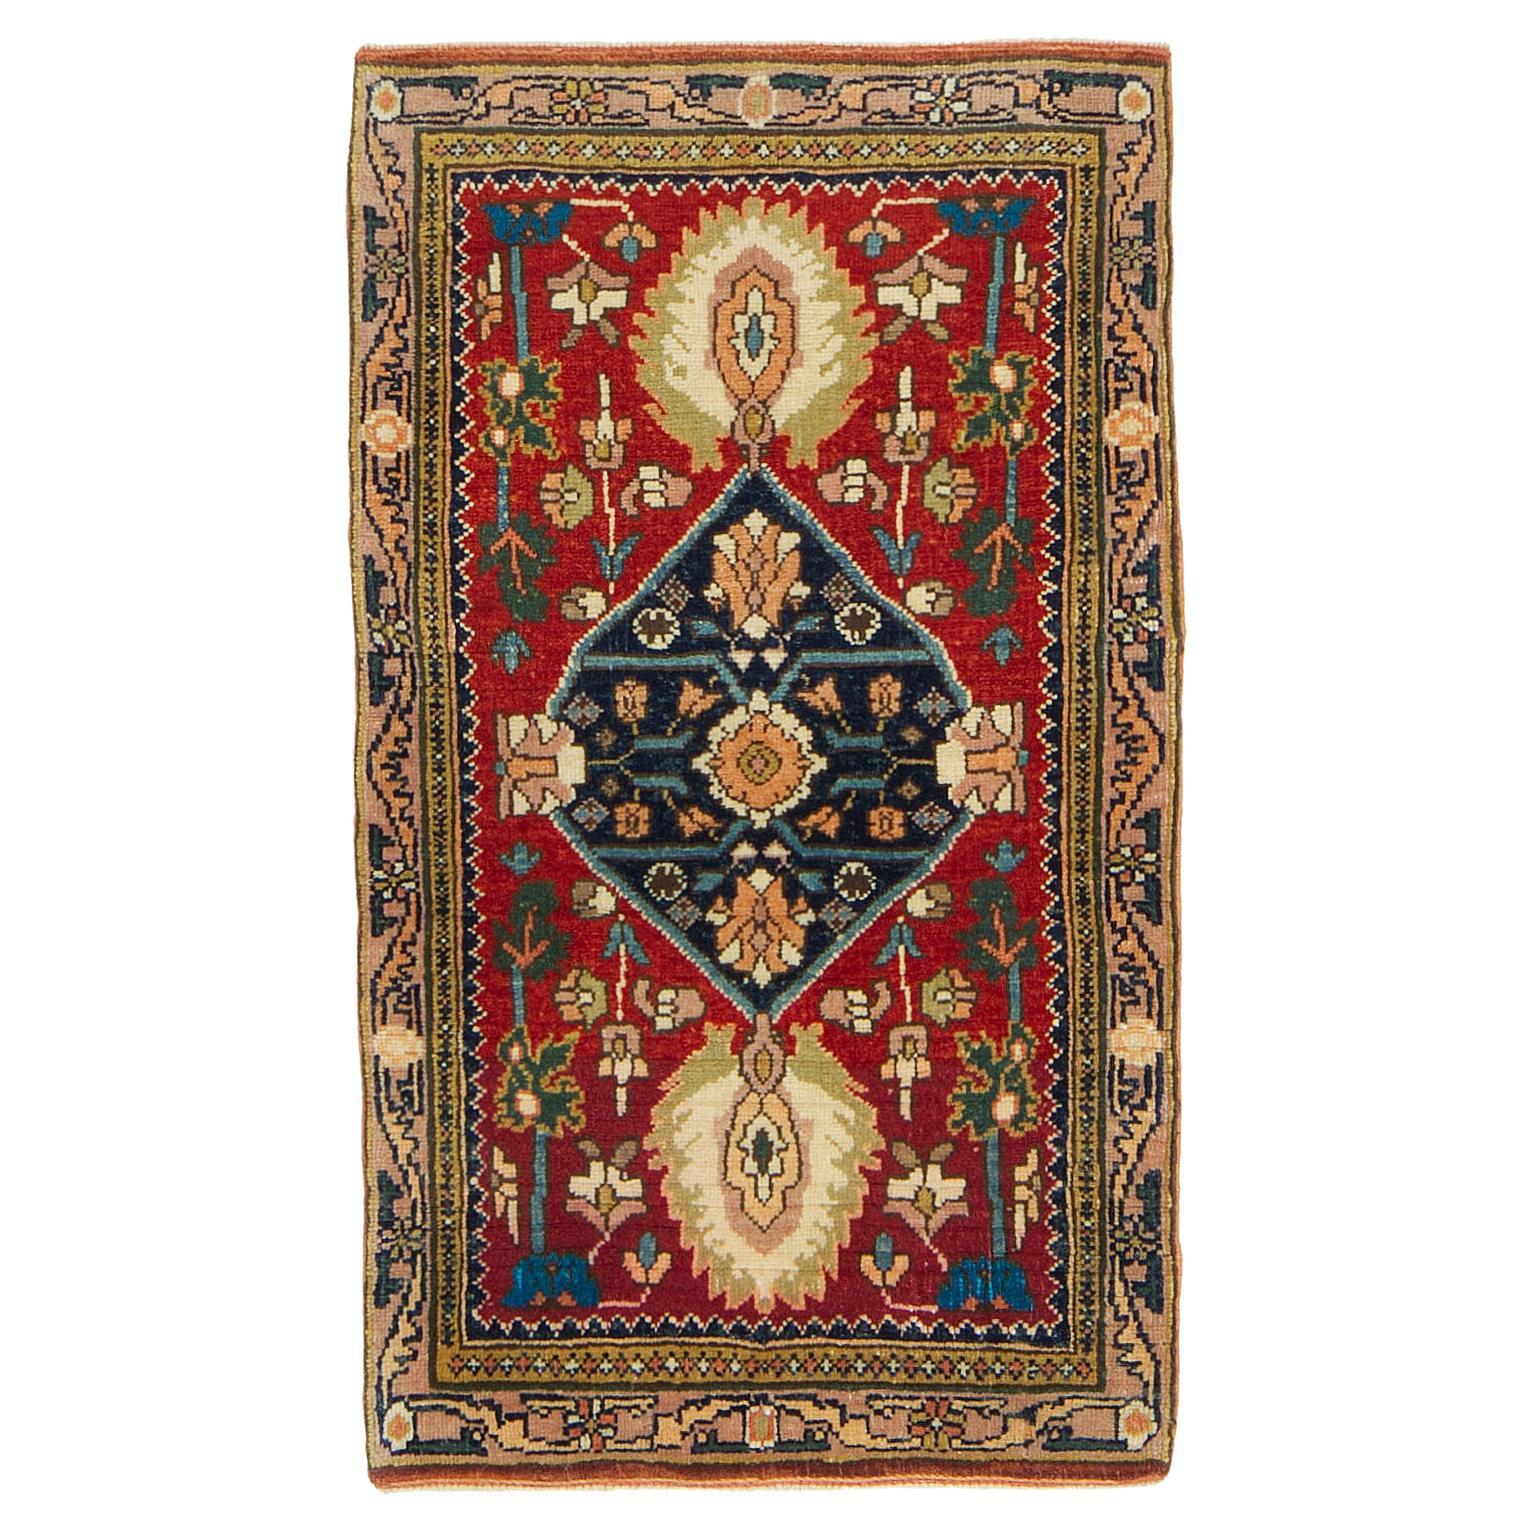 Ararat Rugs Gerous Bidjar Wagireh Medallion Rug Revival Carpet Natural Dyed For Sale